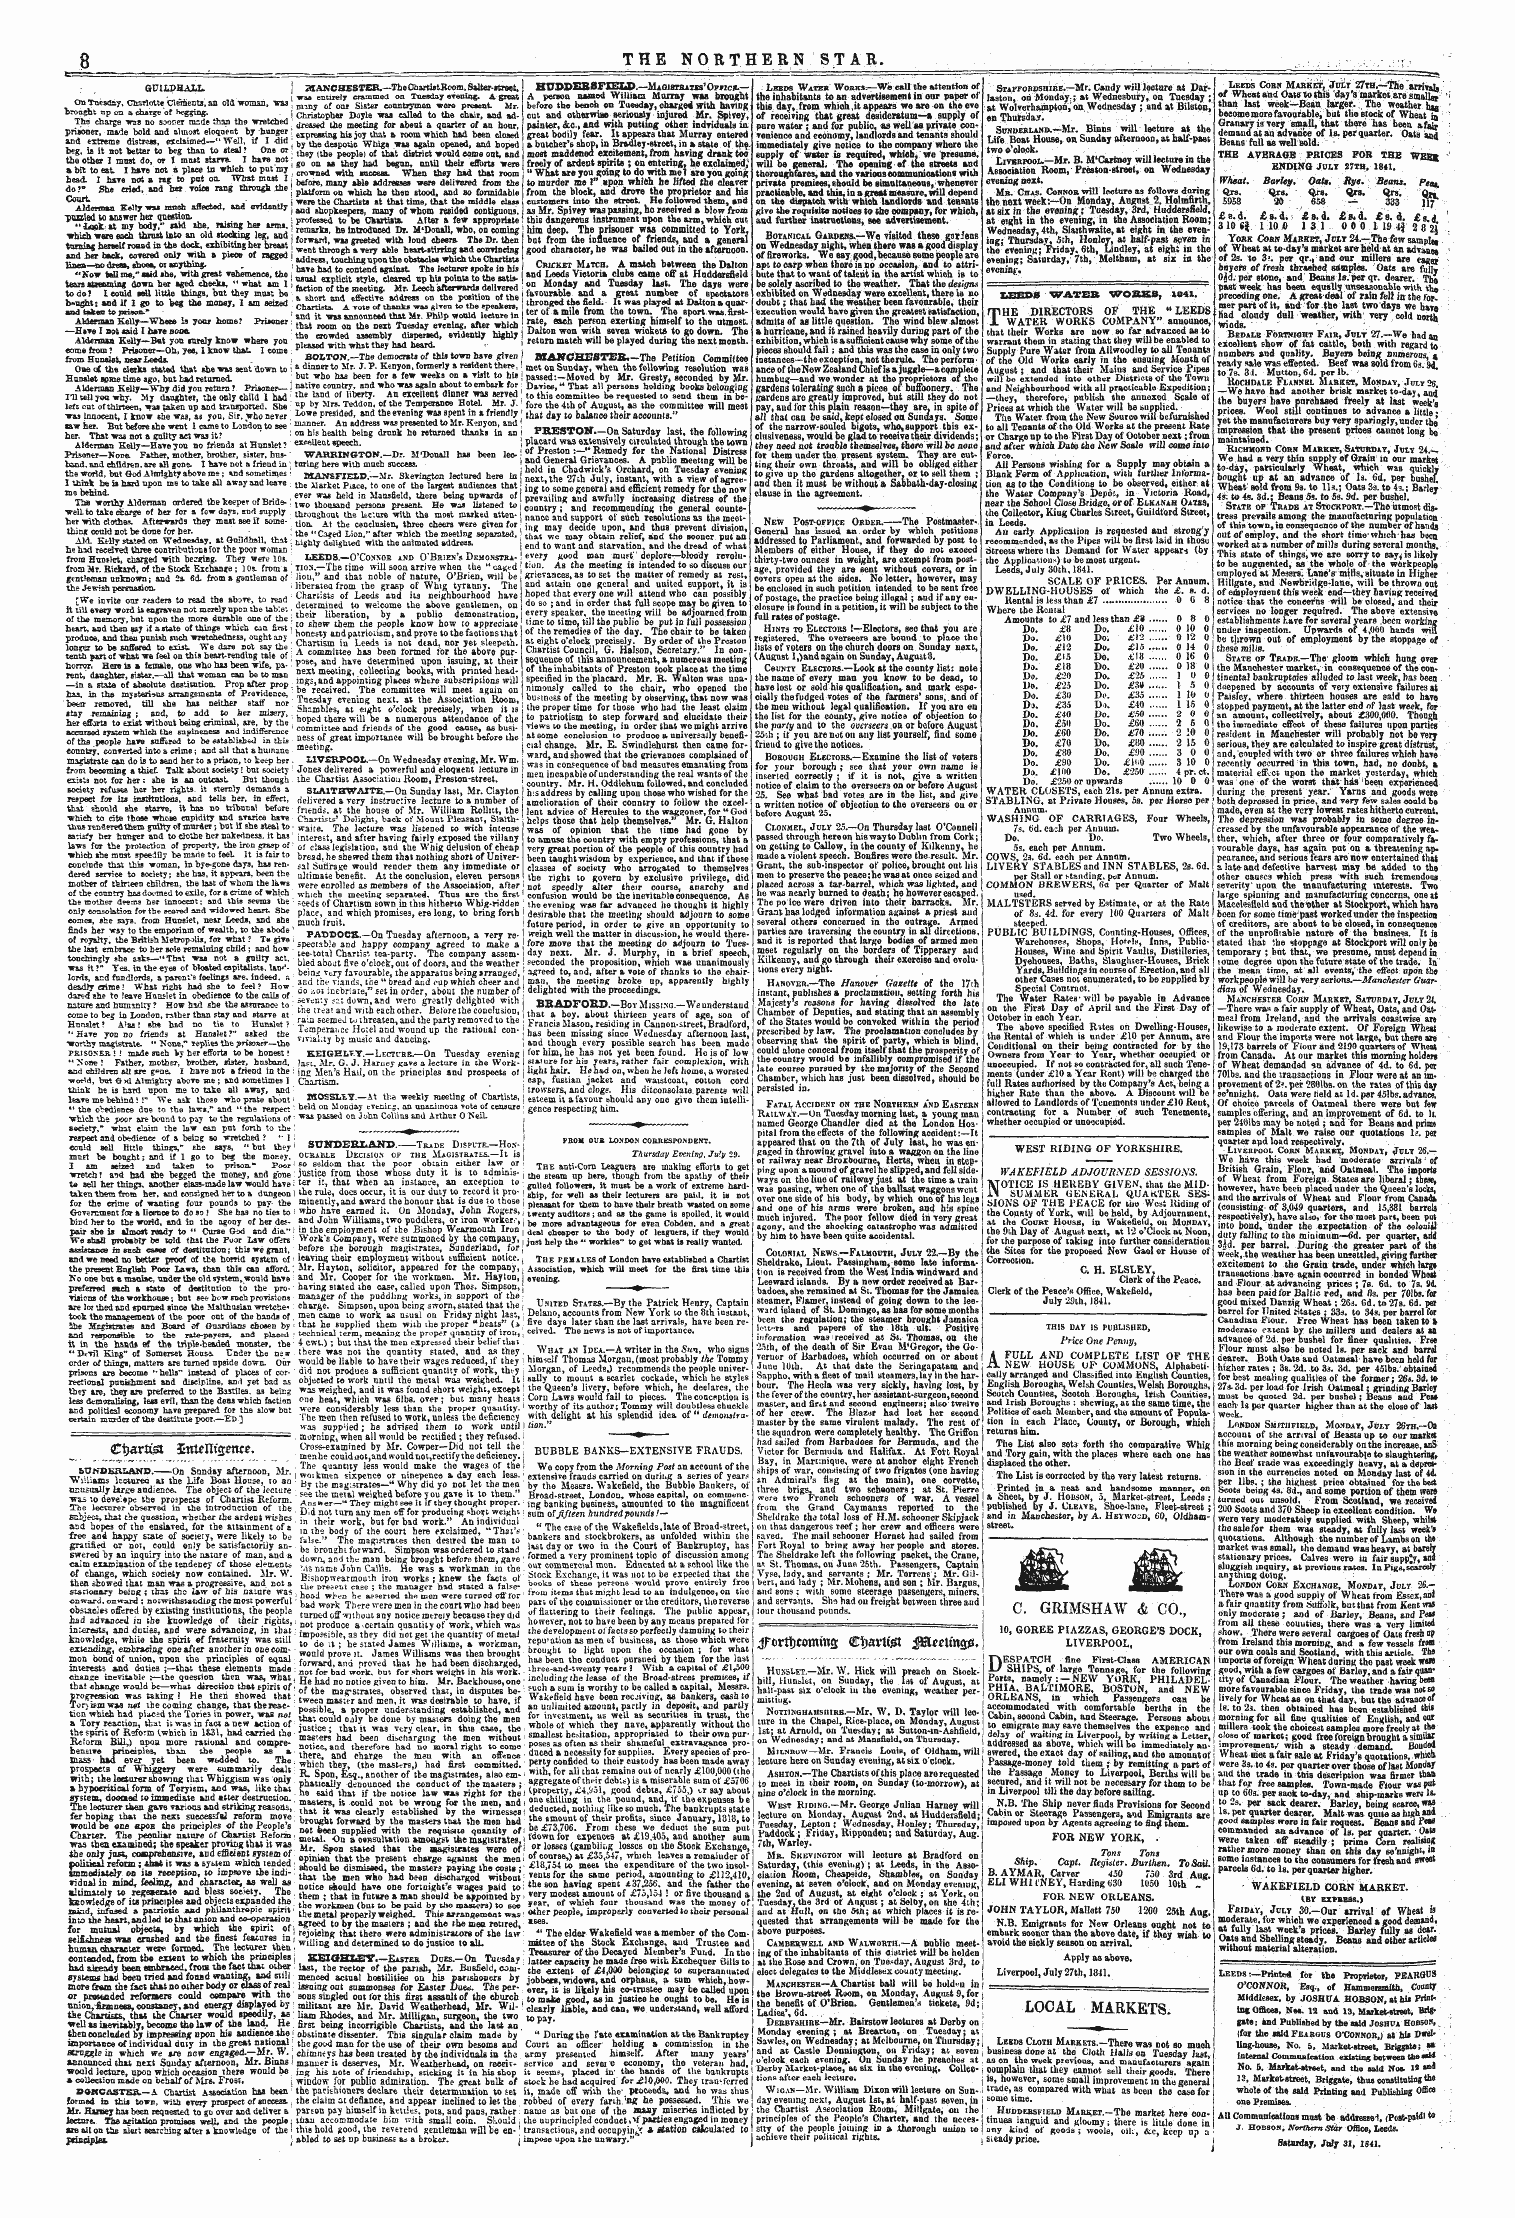 Northern Star (1837-1852): jS F Y, 3rd edition - #Ottt)Comiwa Ctjatitet Fflleetinopi